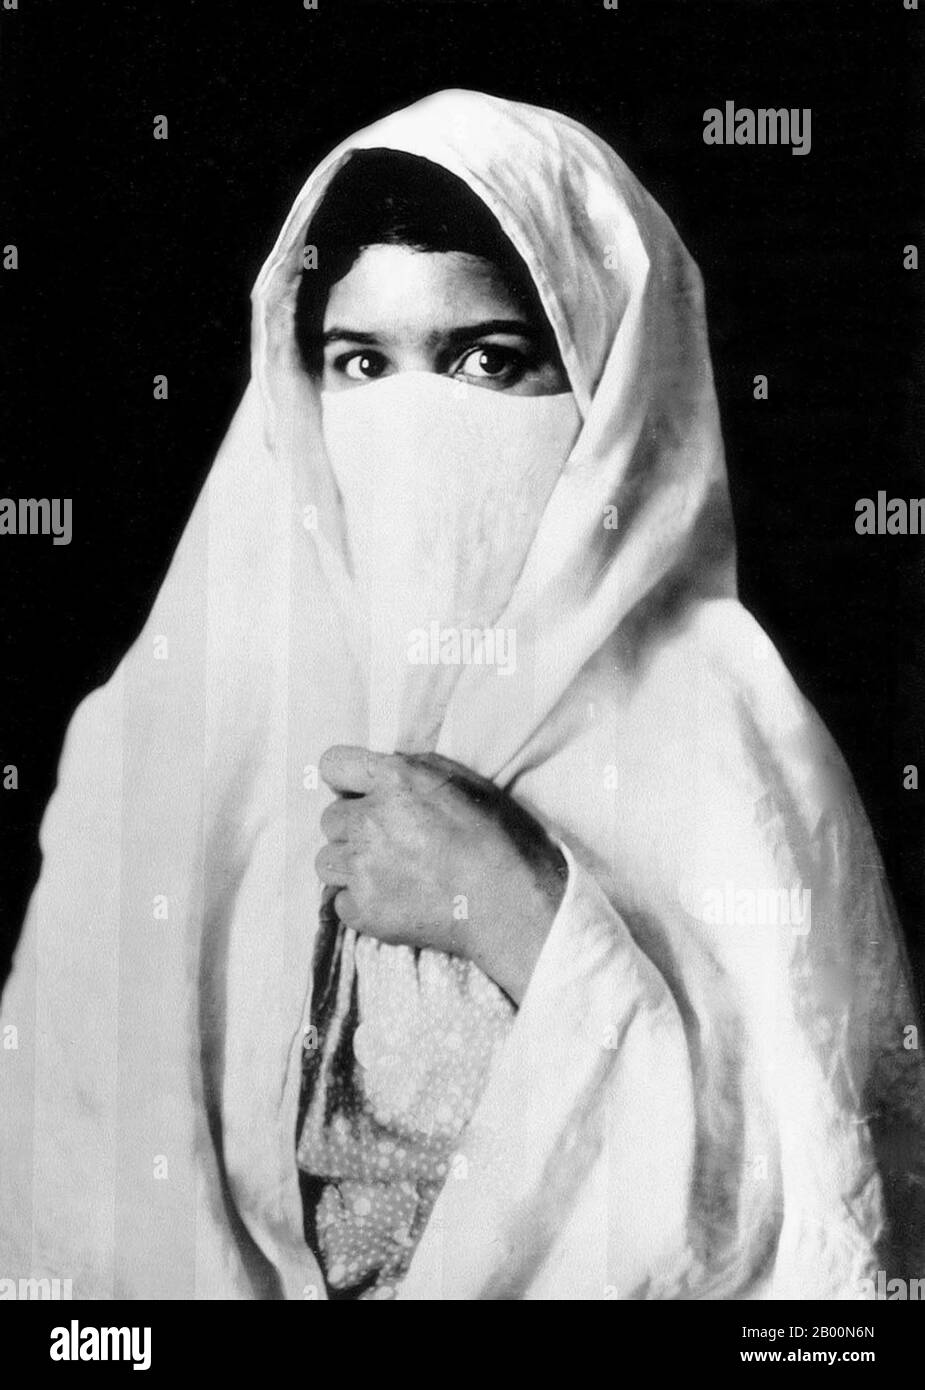 Algérie : musulmane voilée, début du XXe siècle. Photographie d'une femme voilée - vraisemblablement arabe ou bédouine - d'Algérie produite comme souvenir pour le marché touristique européen naissant. Banque D'Images